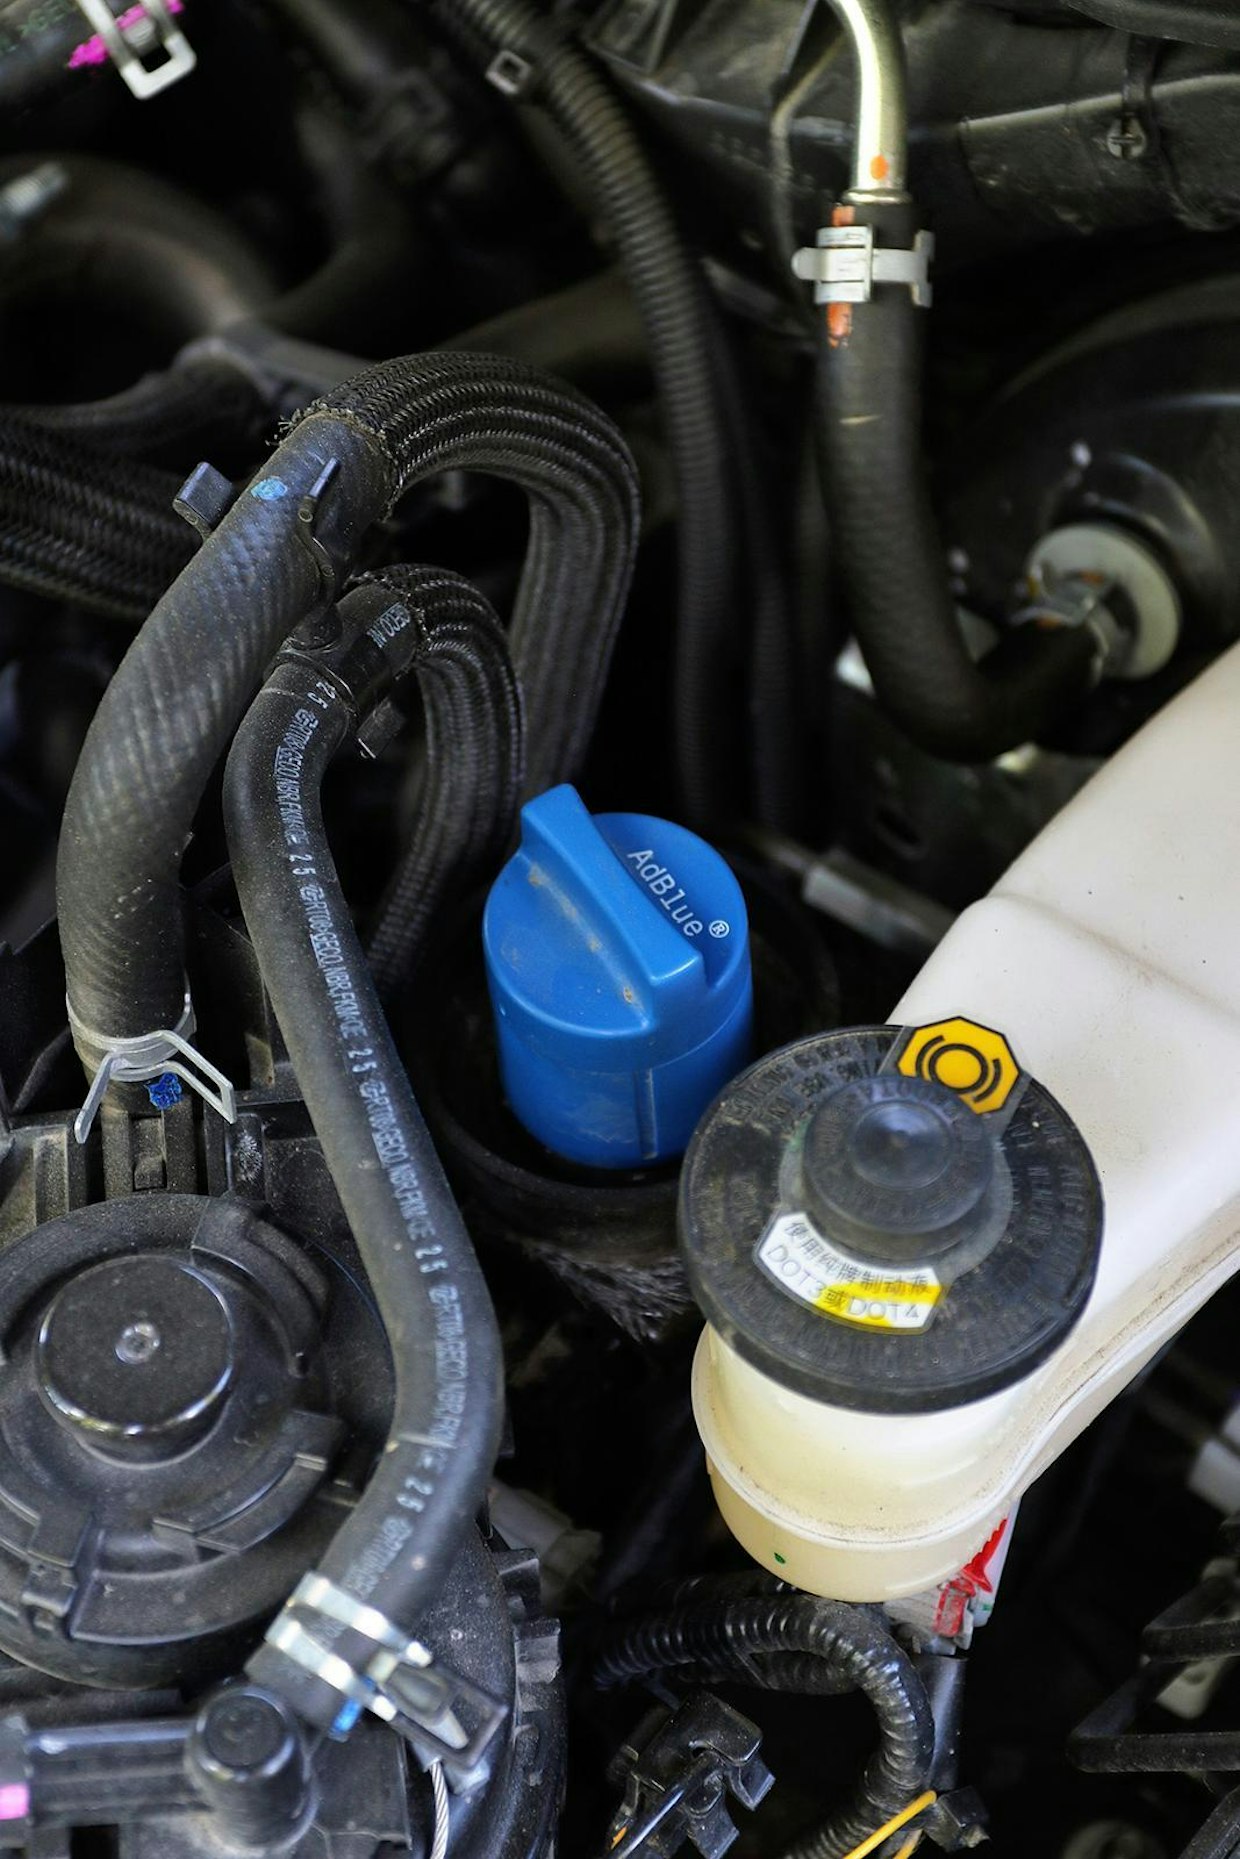 Toyotan AdBluen täyttöaukko on moottoritilassa, kun taas Isuzun ureasäiliö täytetään saman luukun alta kuin diesel. Kanisterista kaataminen on varmasti helpompaa vyötärön tasalla. Onneksi säiliön täyttöväli on melko pitkä.